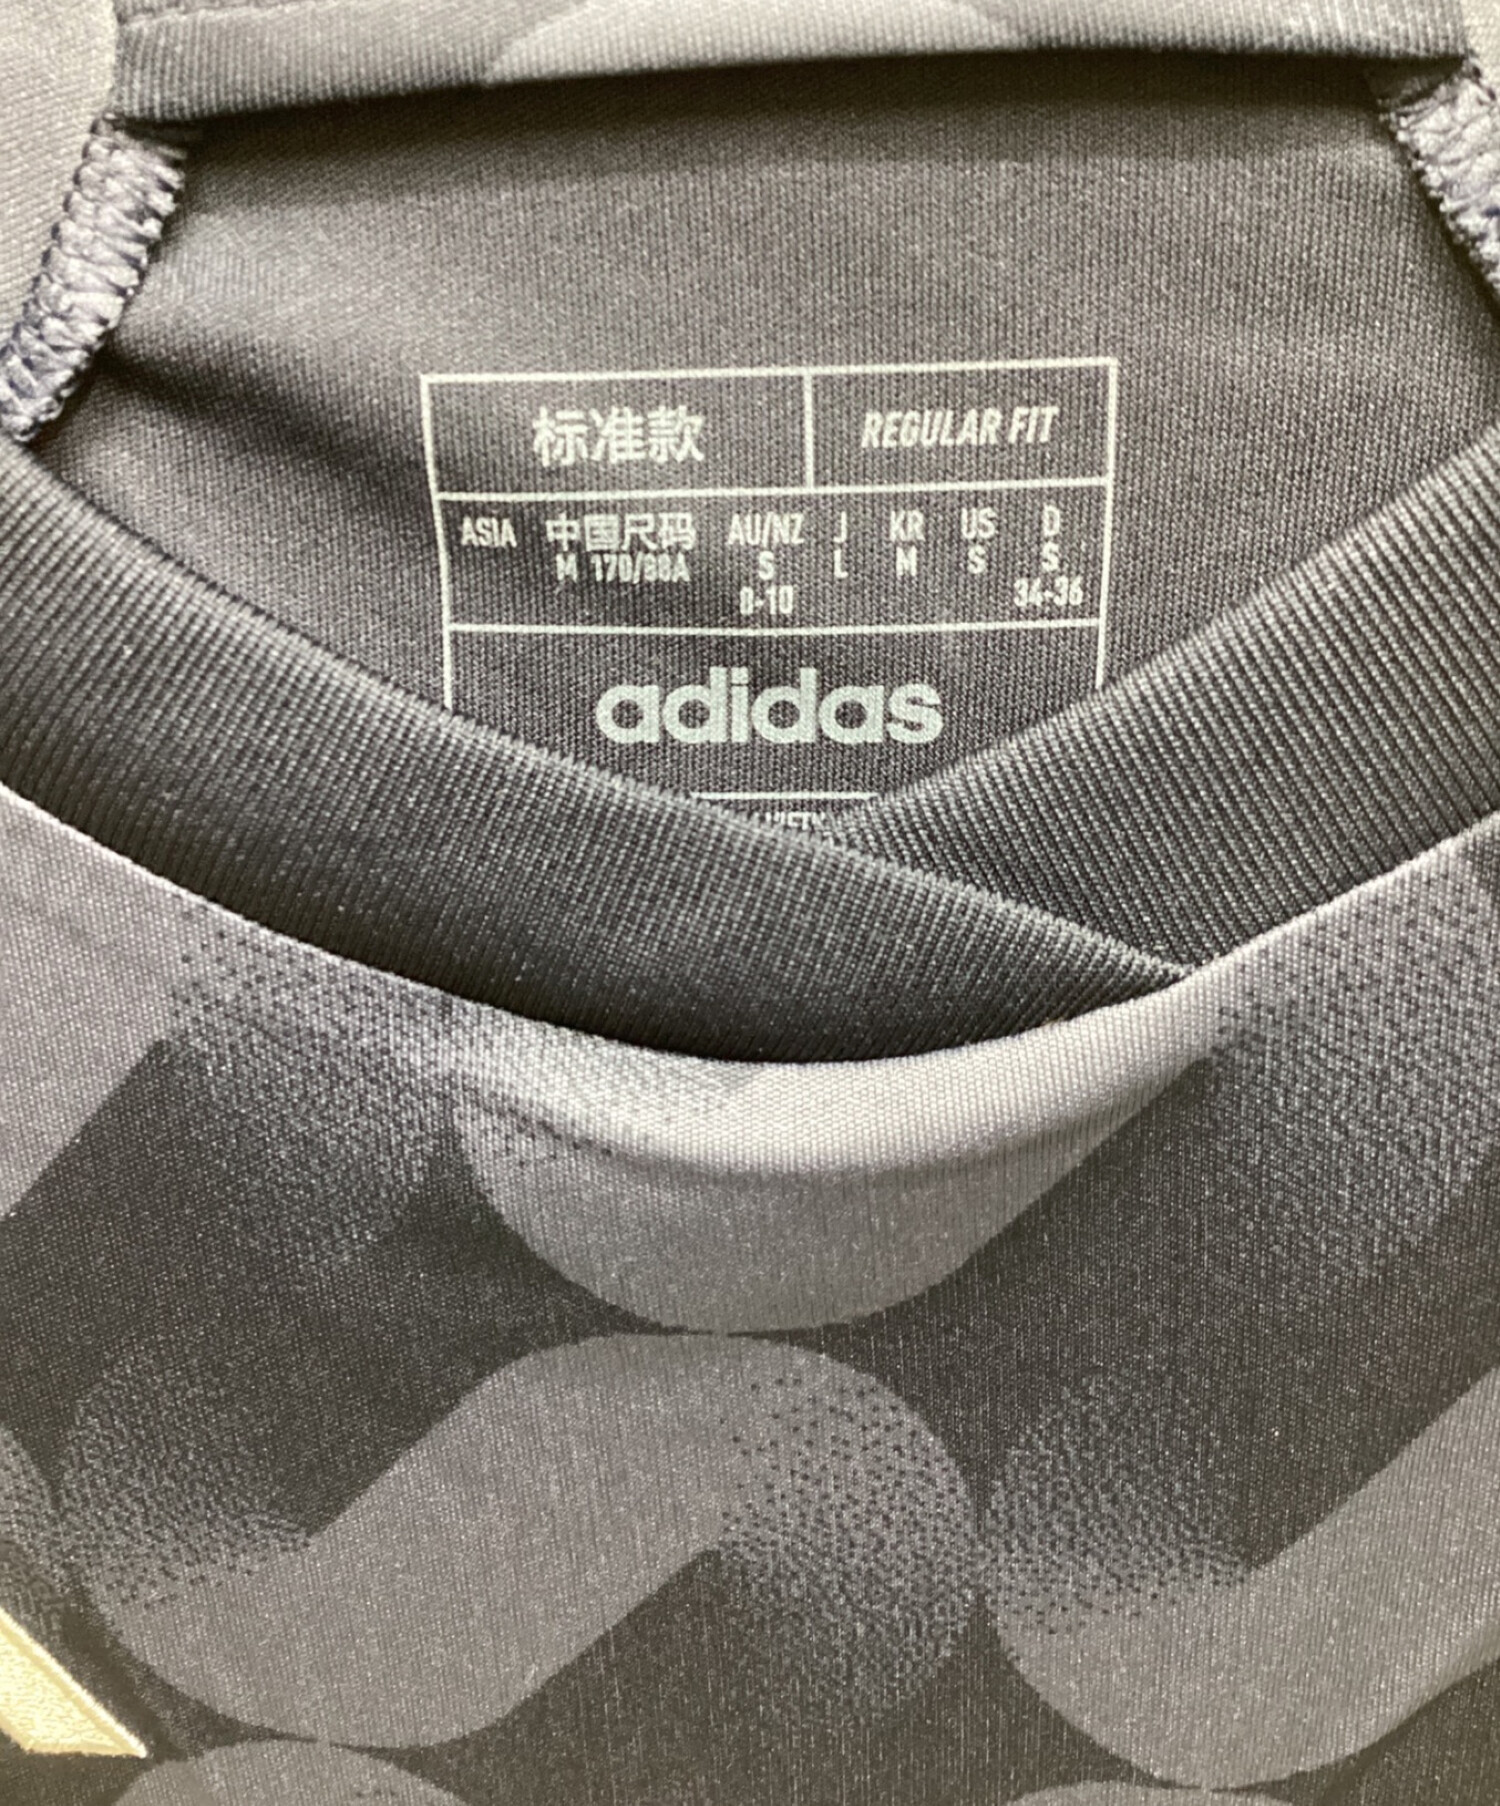 adidas (アディダス) アウェイレプリカユニフォーム ネイビー サイズ:L